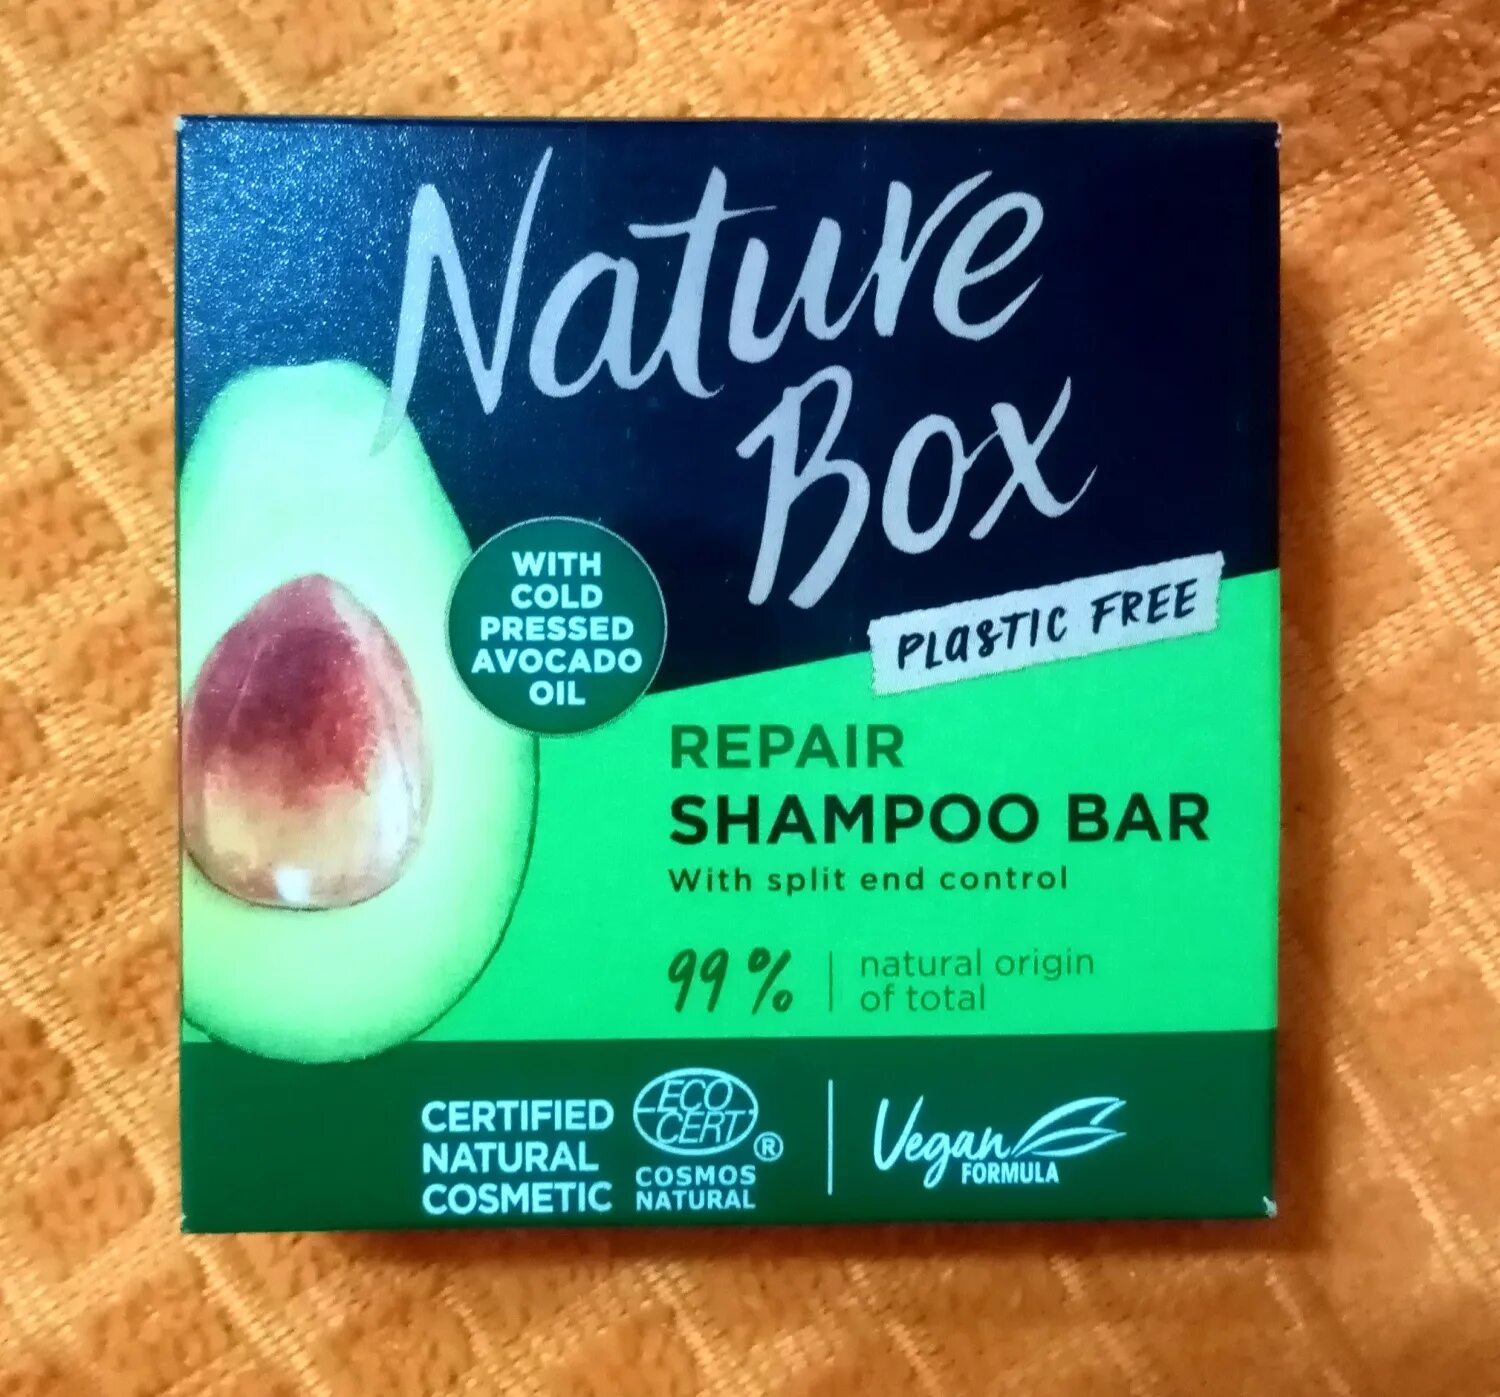 Отзывы твердый шампунь Schwarzkopf Box nature. Твердый шампунь для волос с авокадо отзывы. Шампунь lutonika отзывы. Natural box